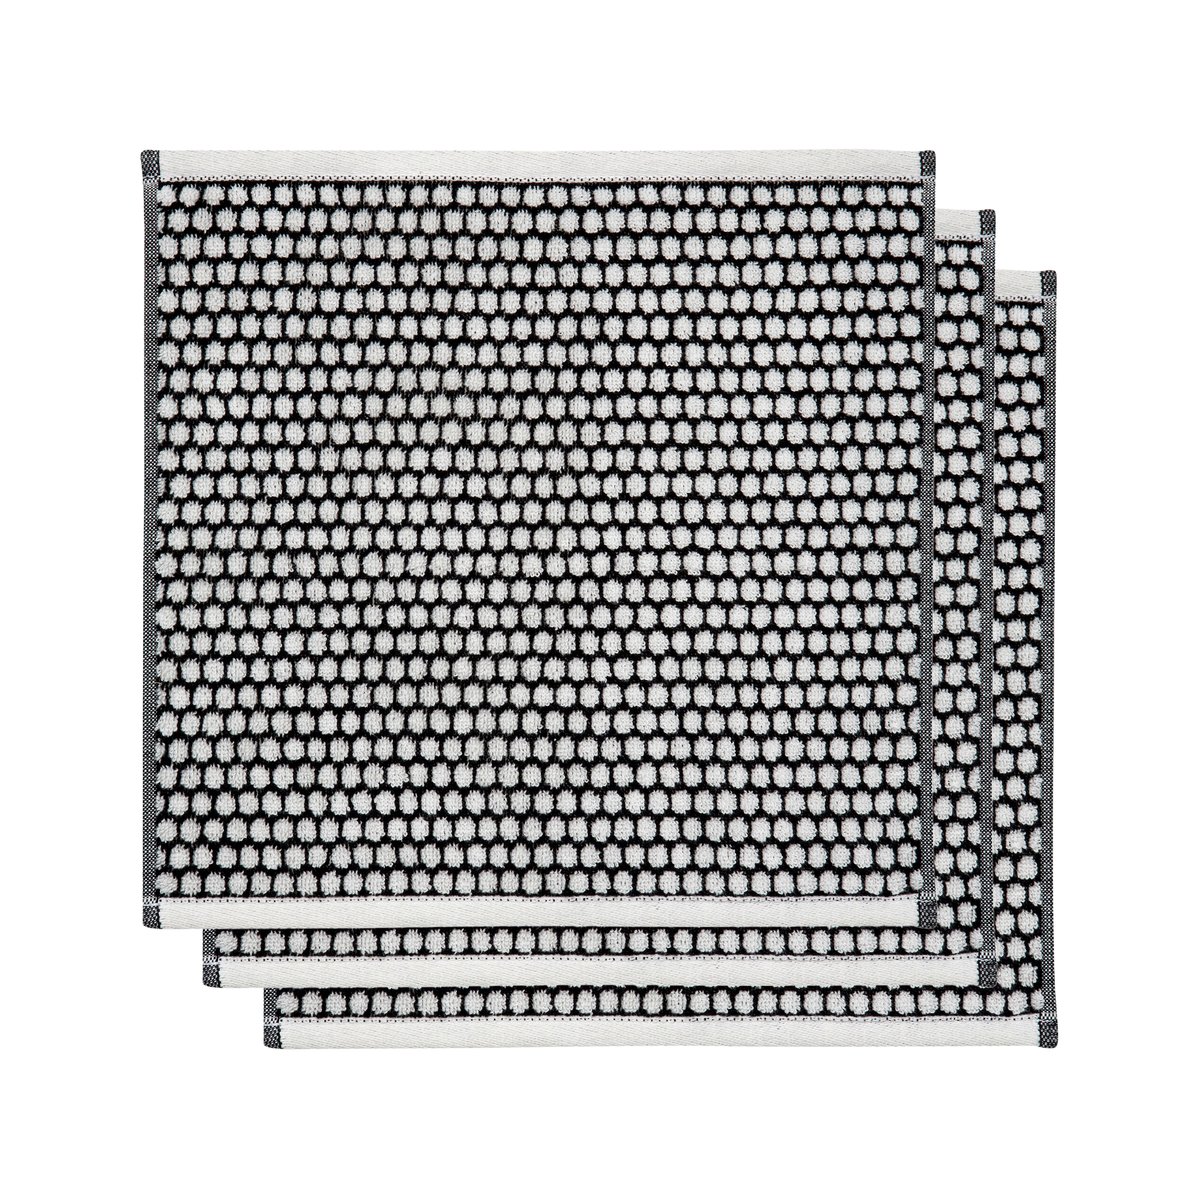 Bilde av Mette Ditmer Grid håndkle 31 x 31 cm 3-pakning Sort-offwhite